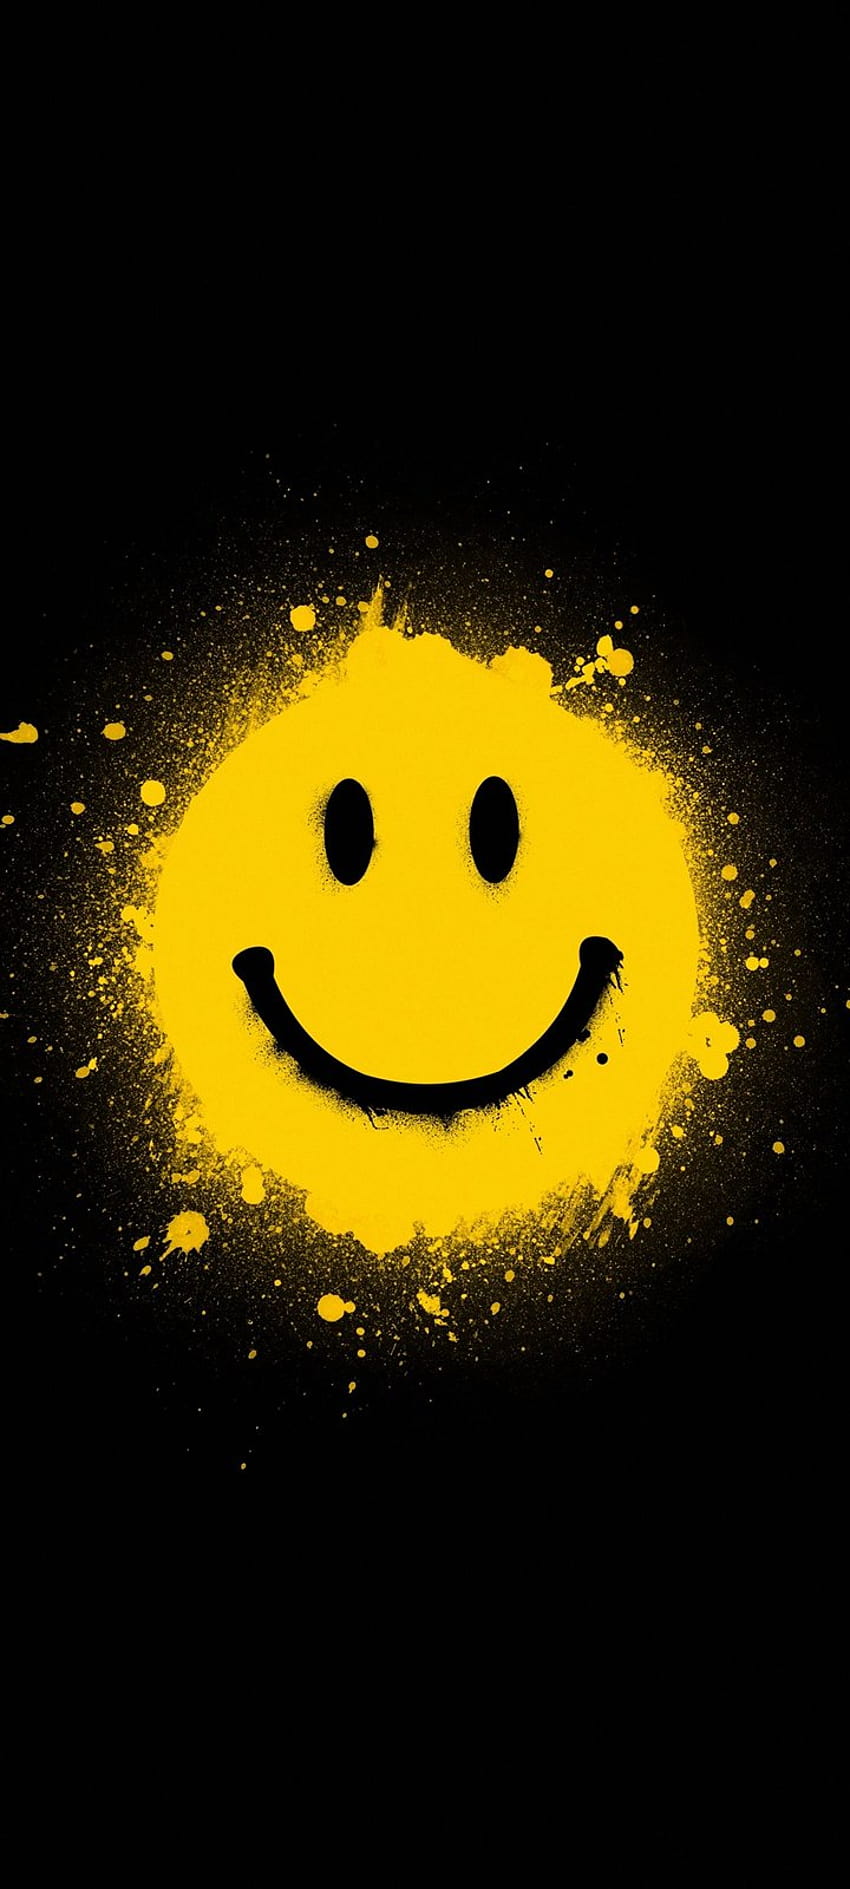 Faccina sorridente Sfondi gialli 720x1600, faccina sorridente gialla Sfondo del telefono HD